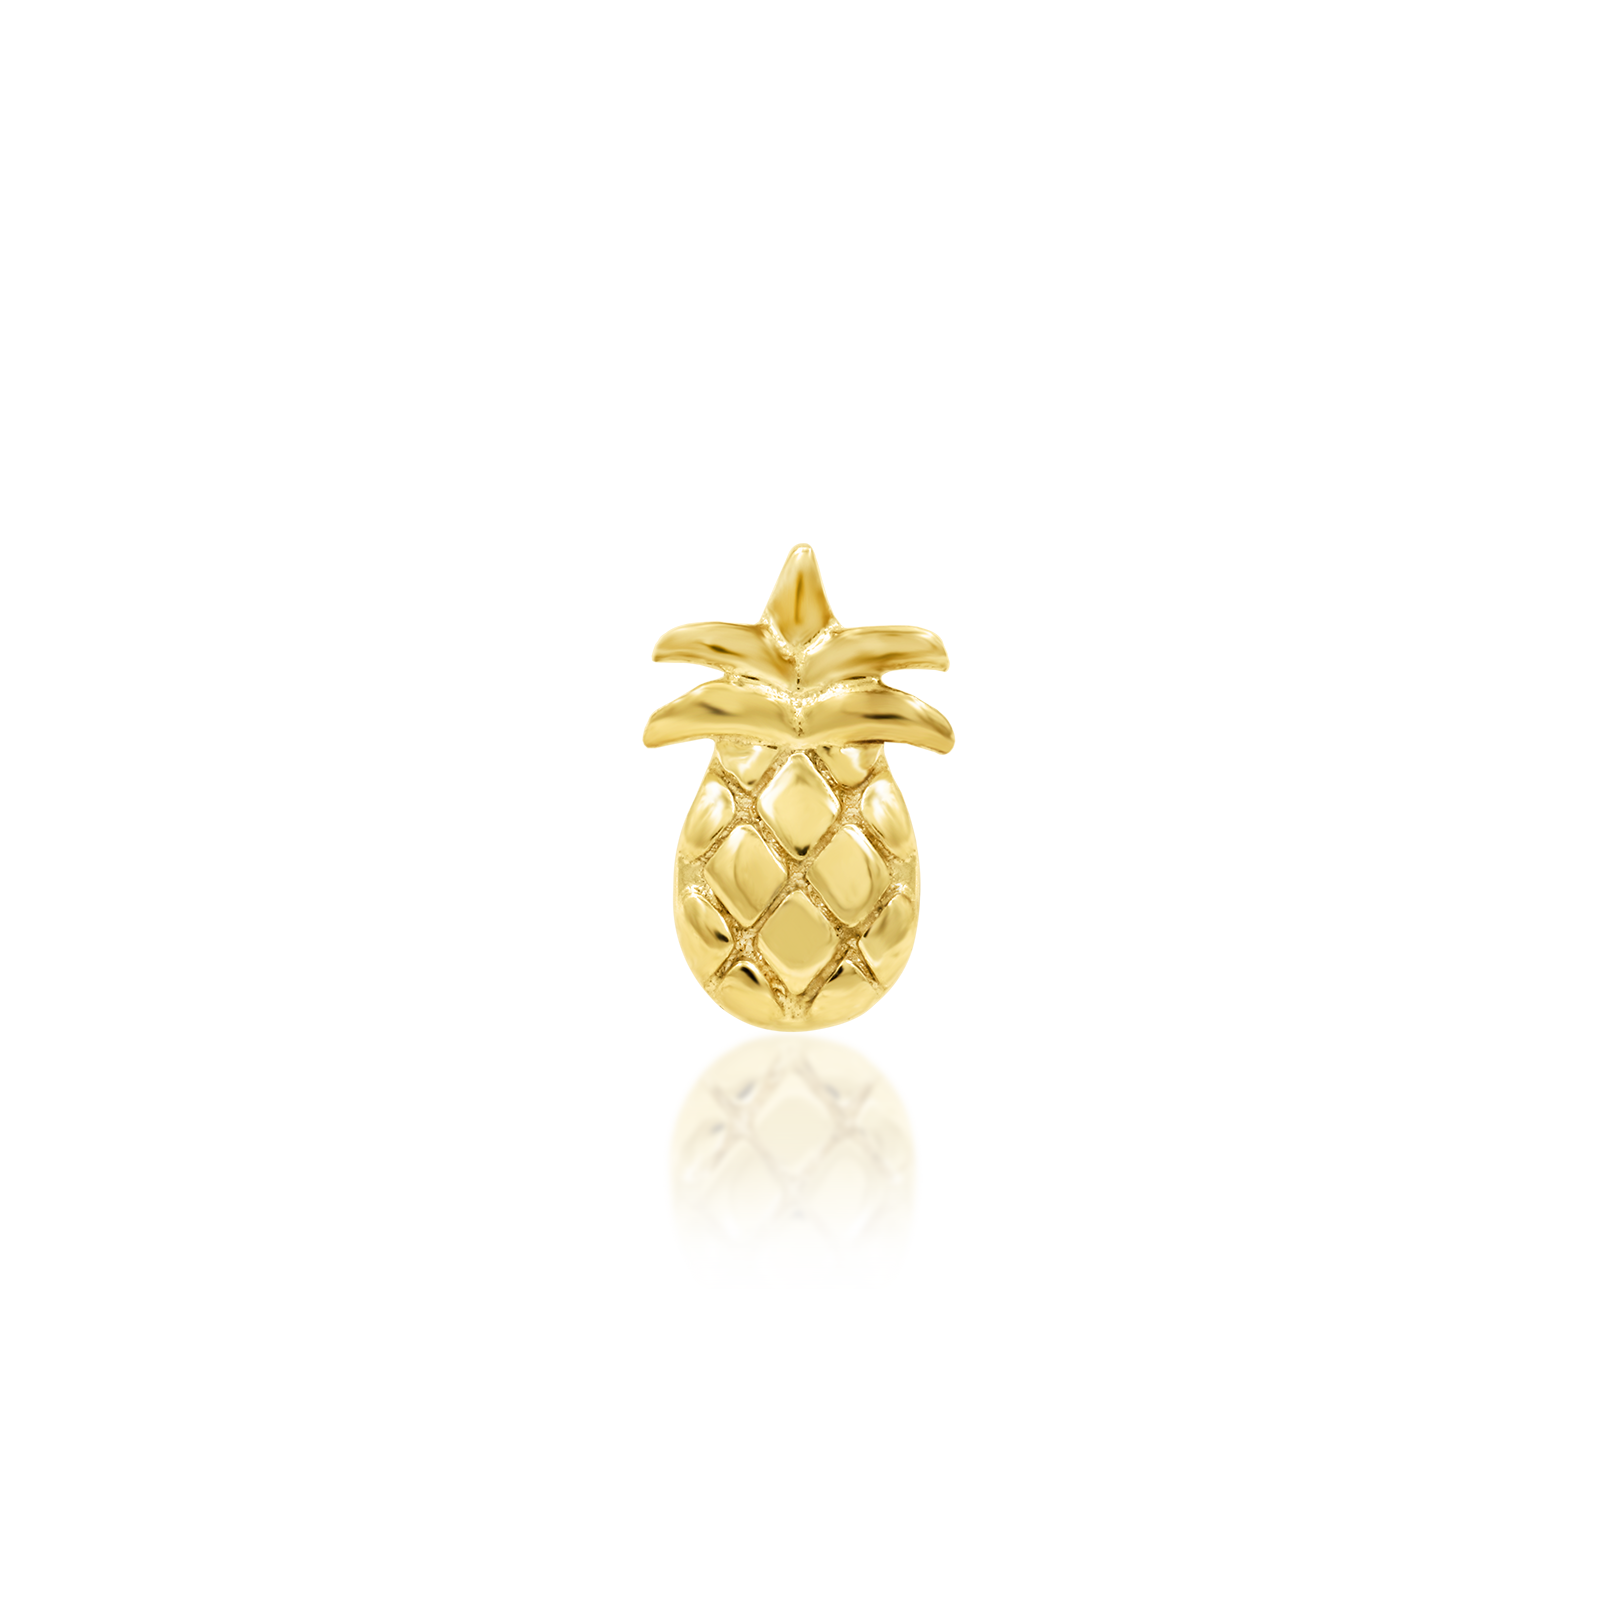 Mini Pineapple in 14k Gold by Junipurr